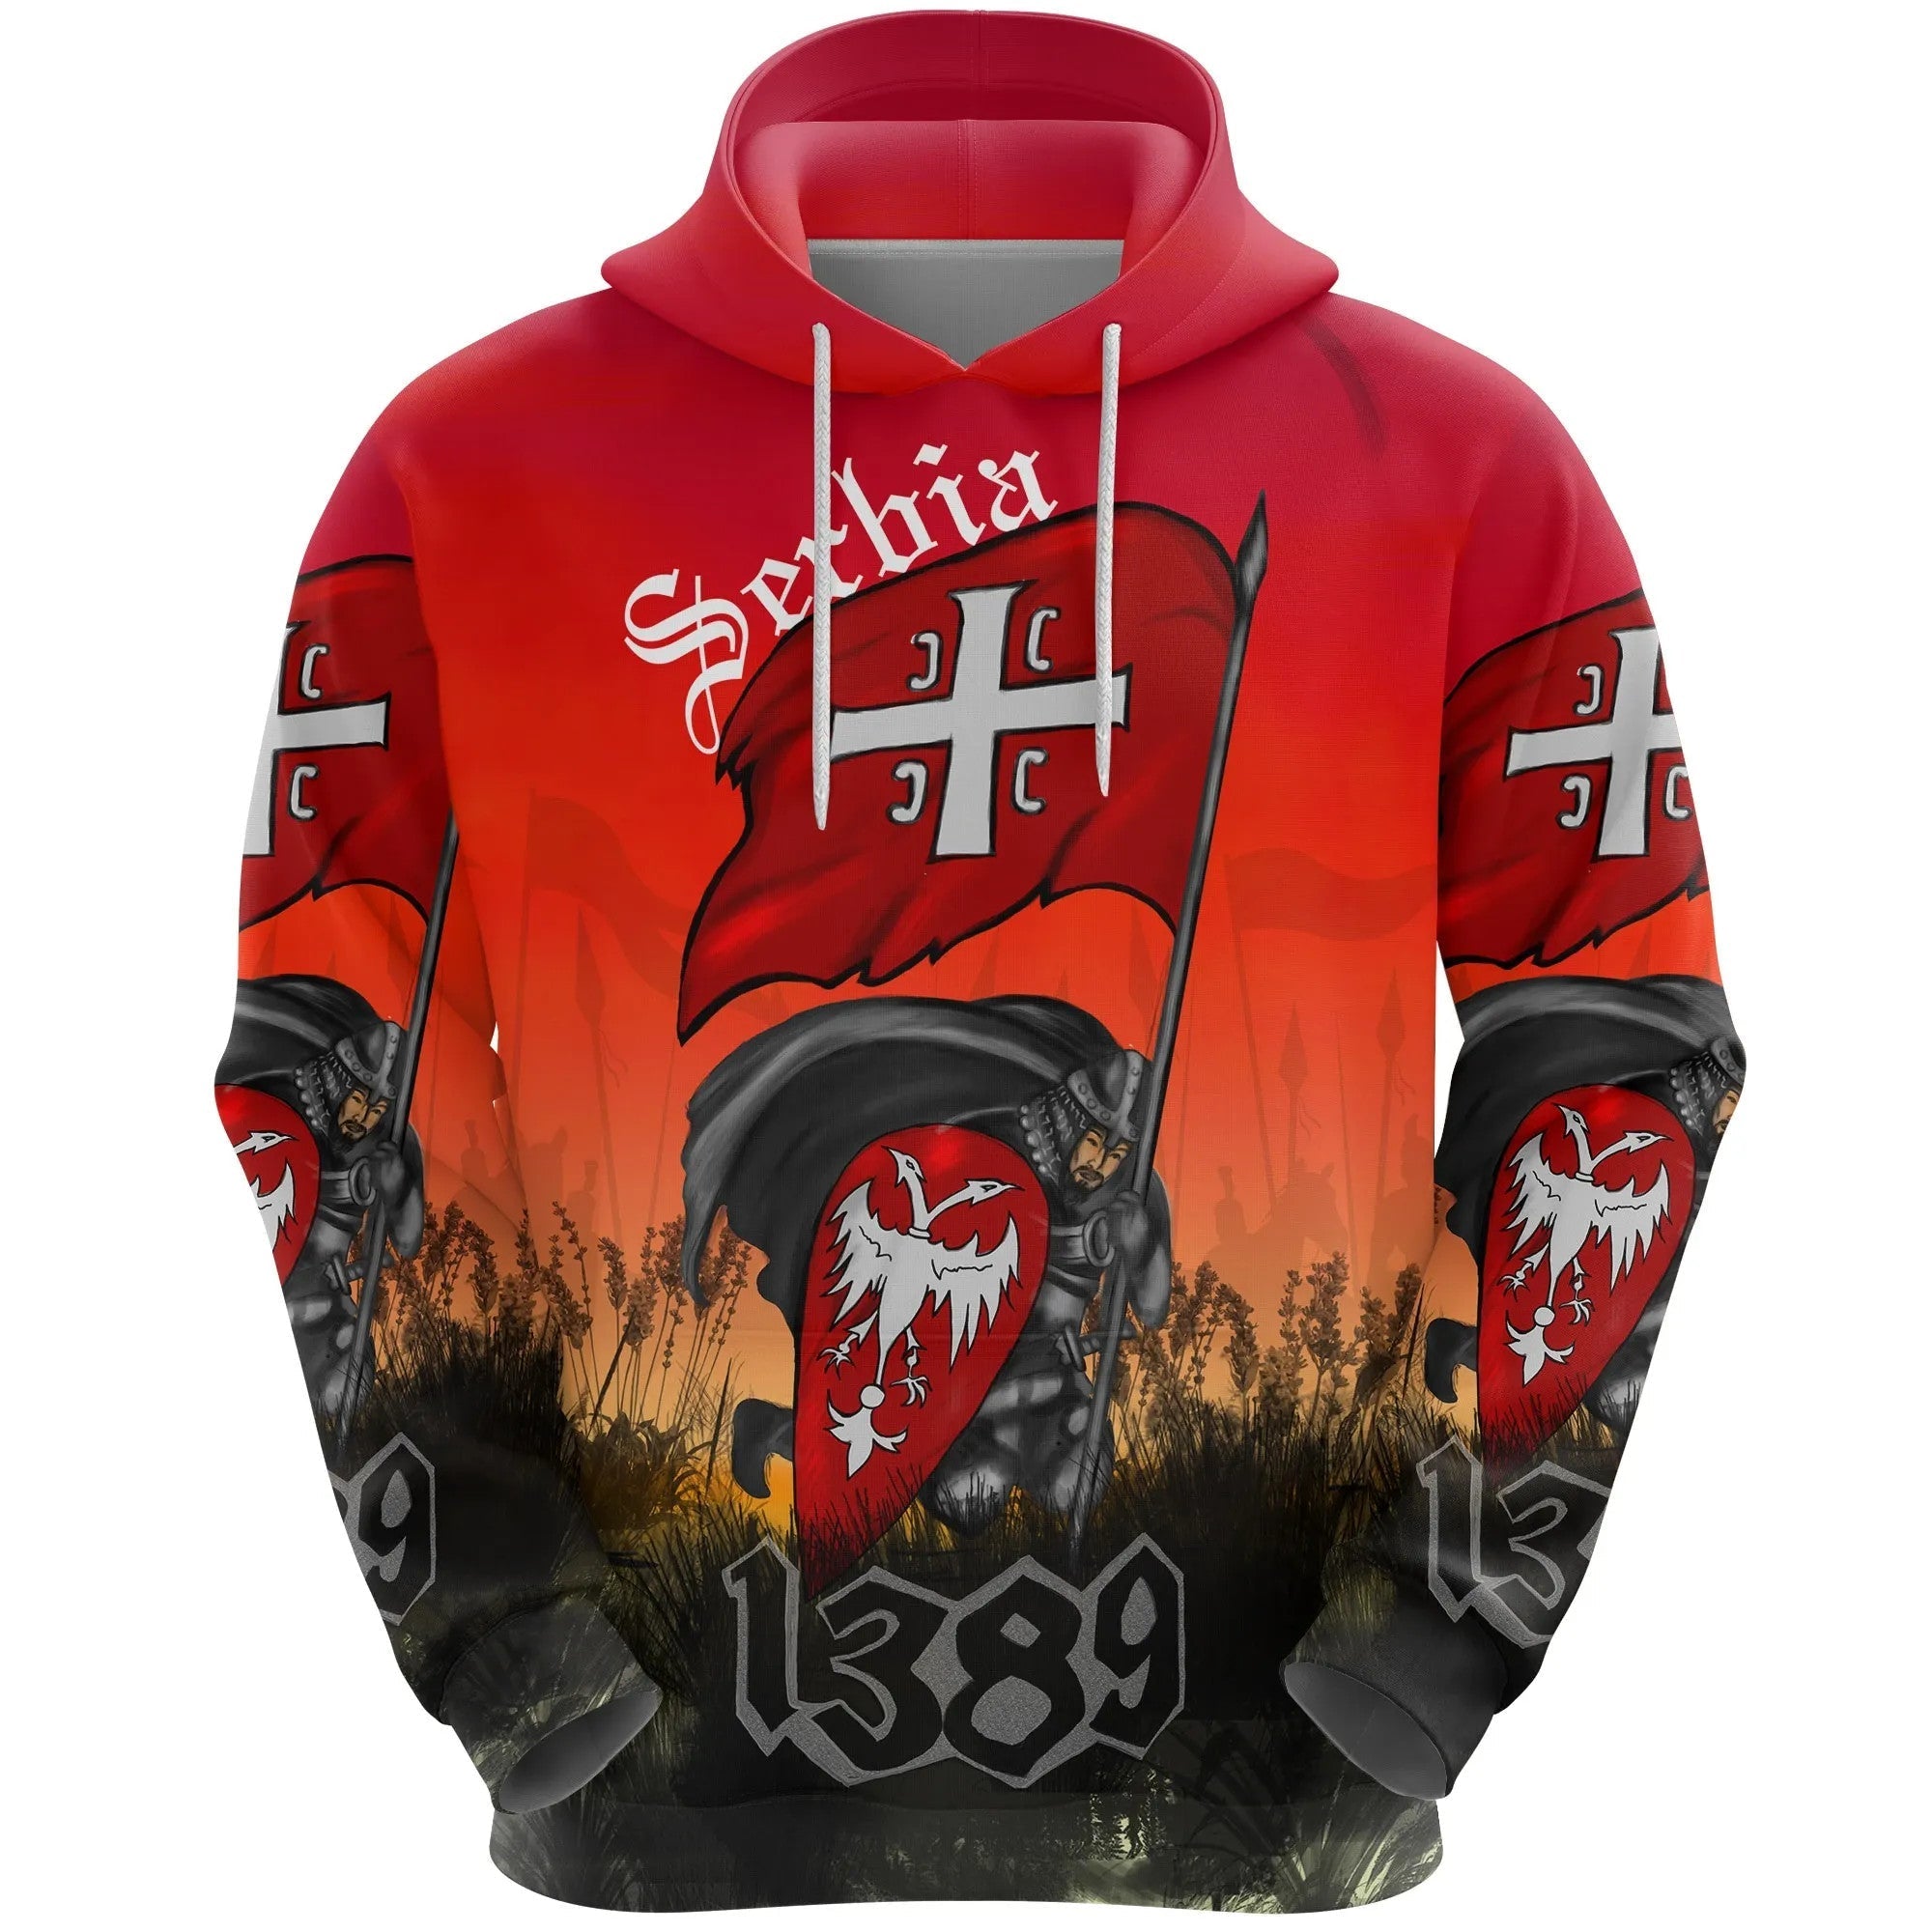 serbia-hoodie-1389